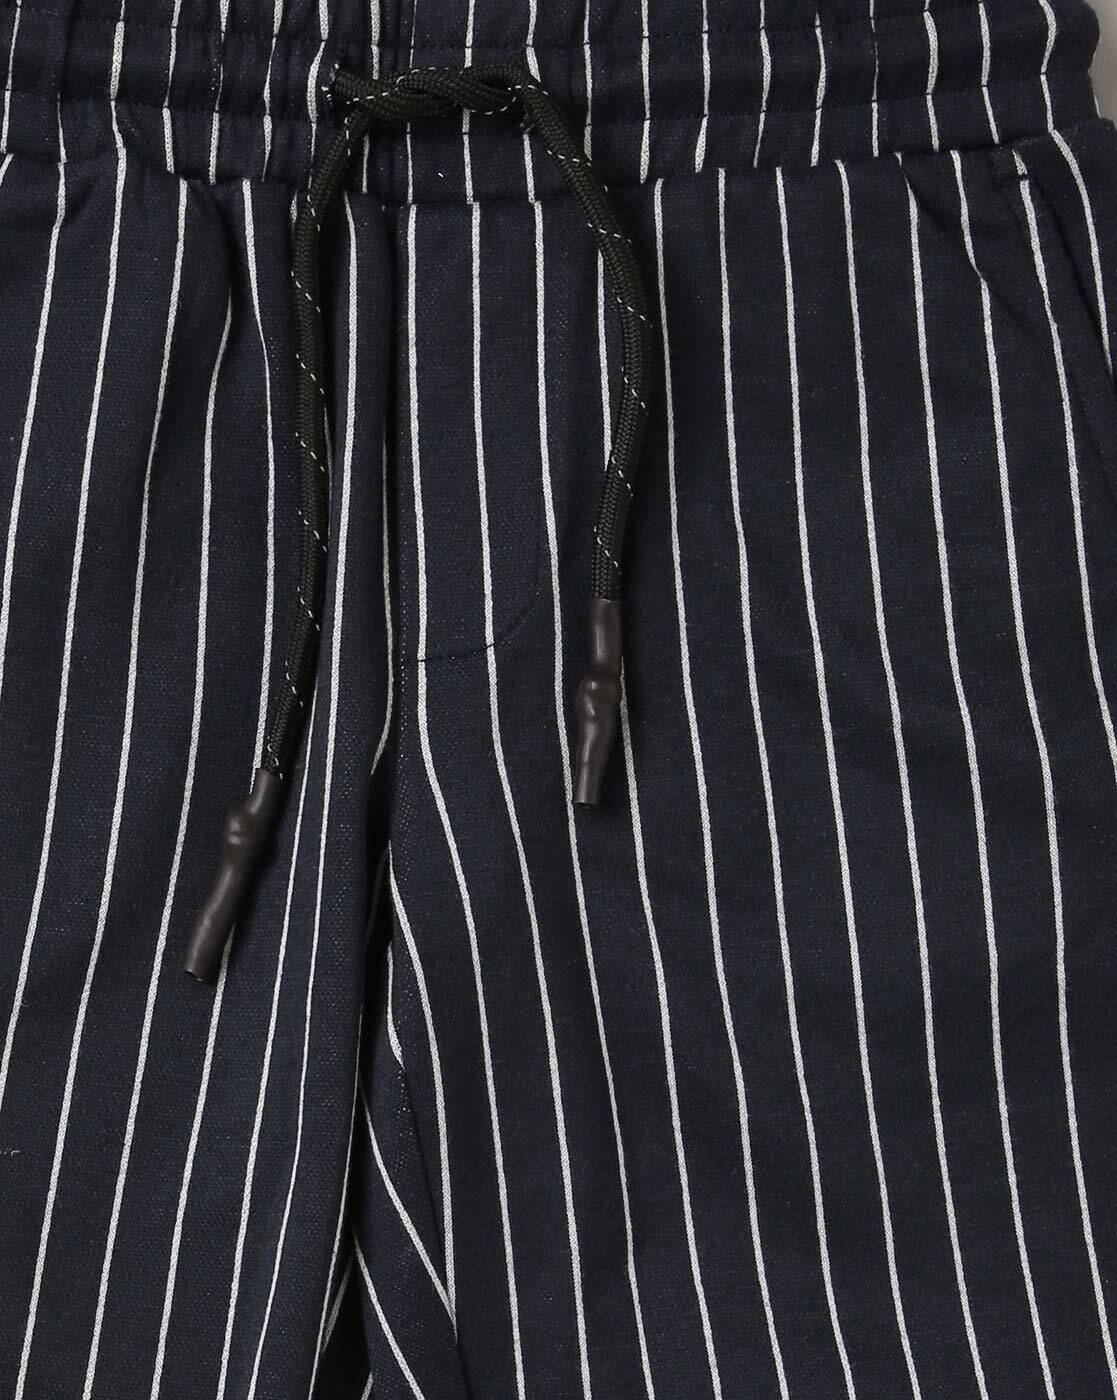 Women Striped Trousers - Buy Women Striped Trousers online in India